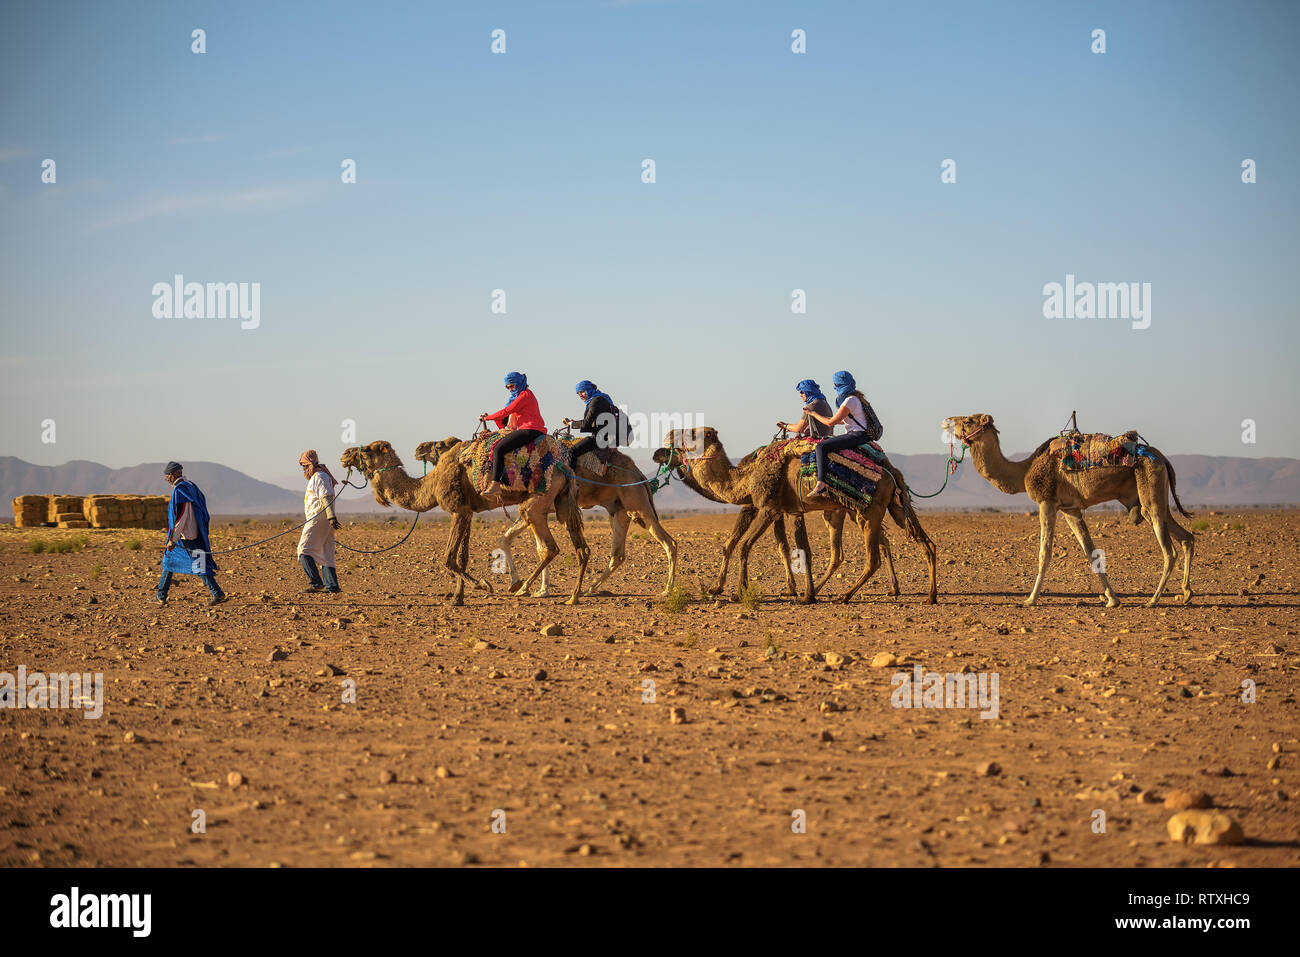 Caravana de camellos con turistas, atravesando el desierto del Sahara Foto de stock